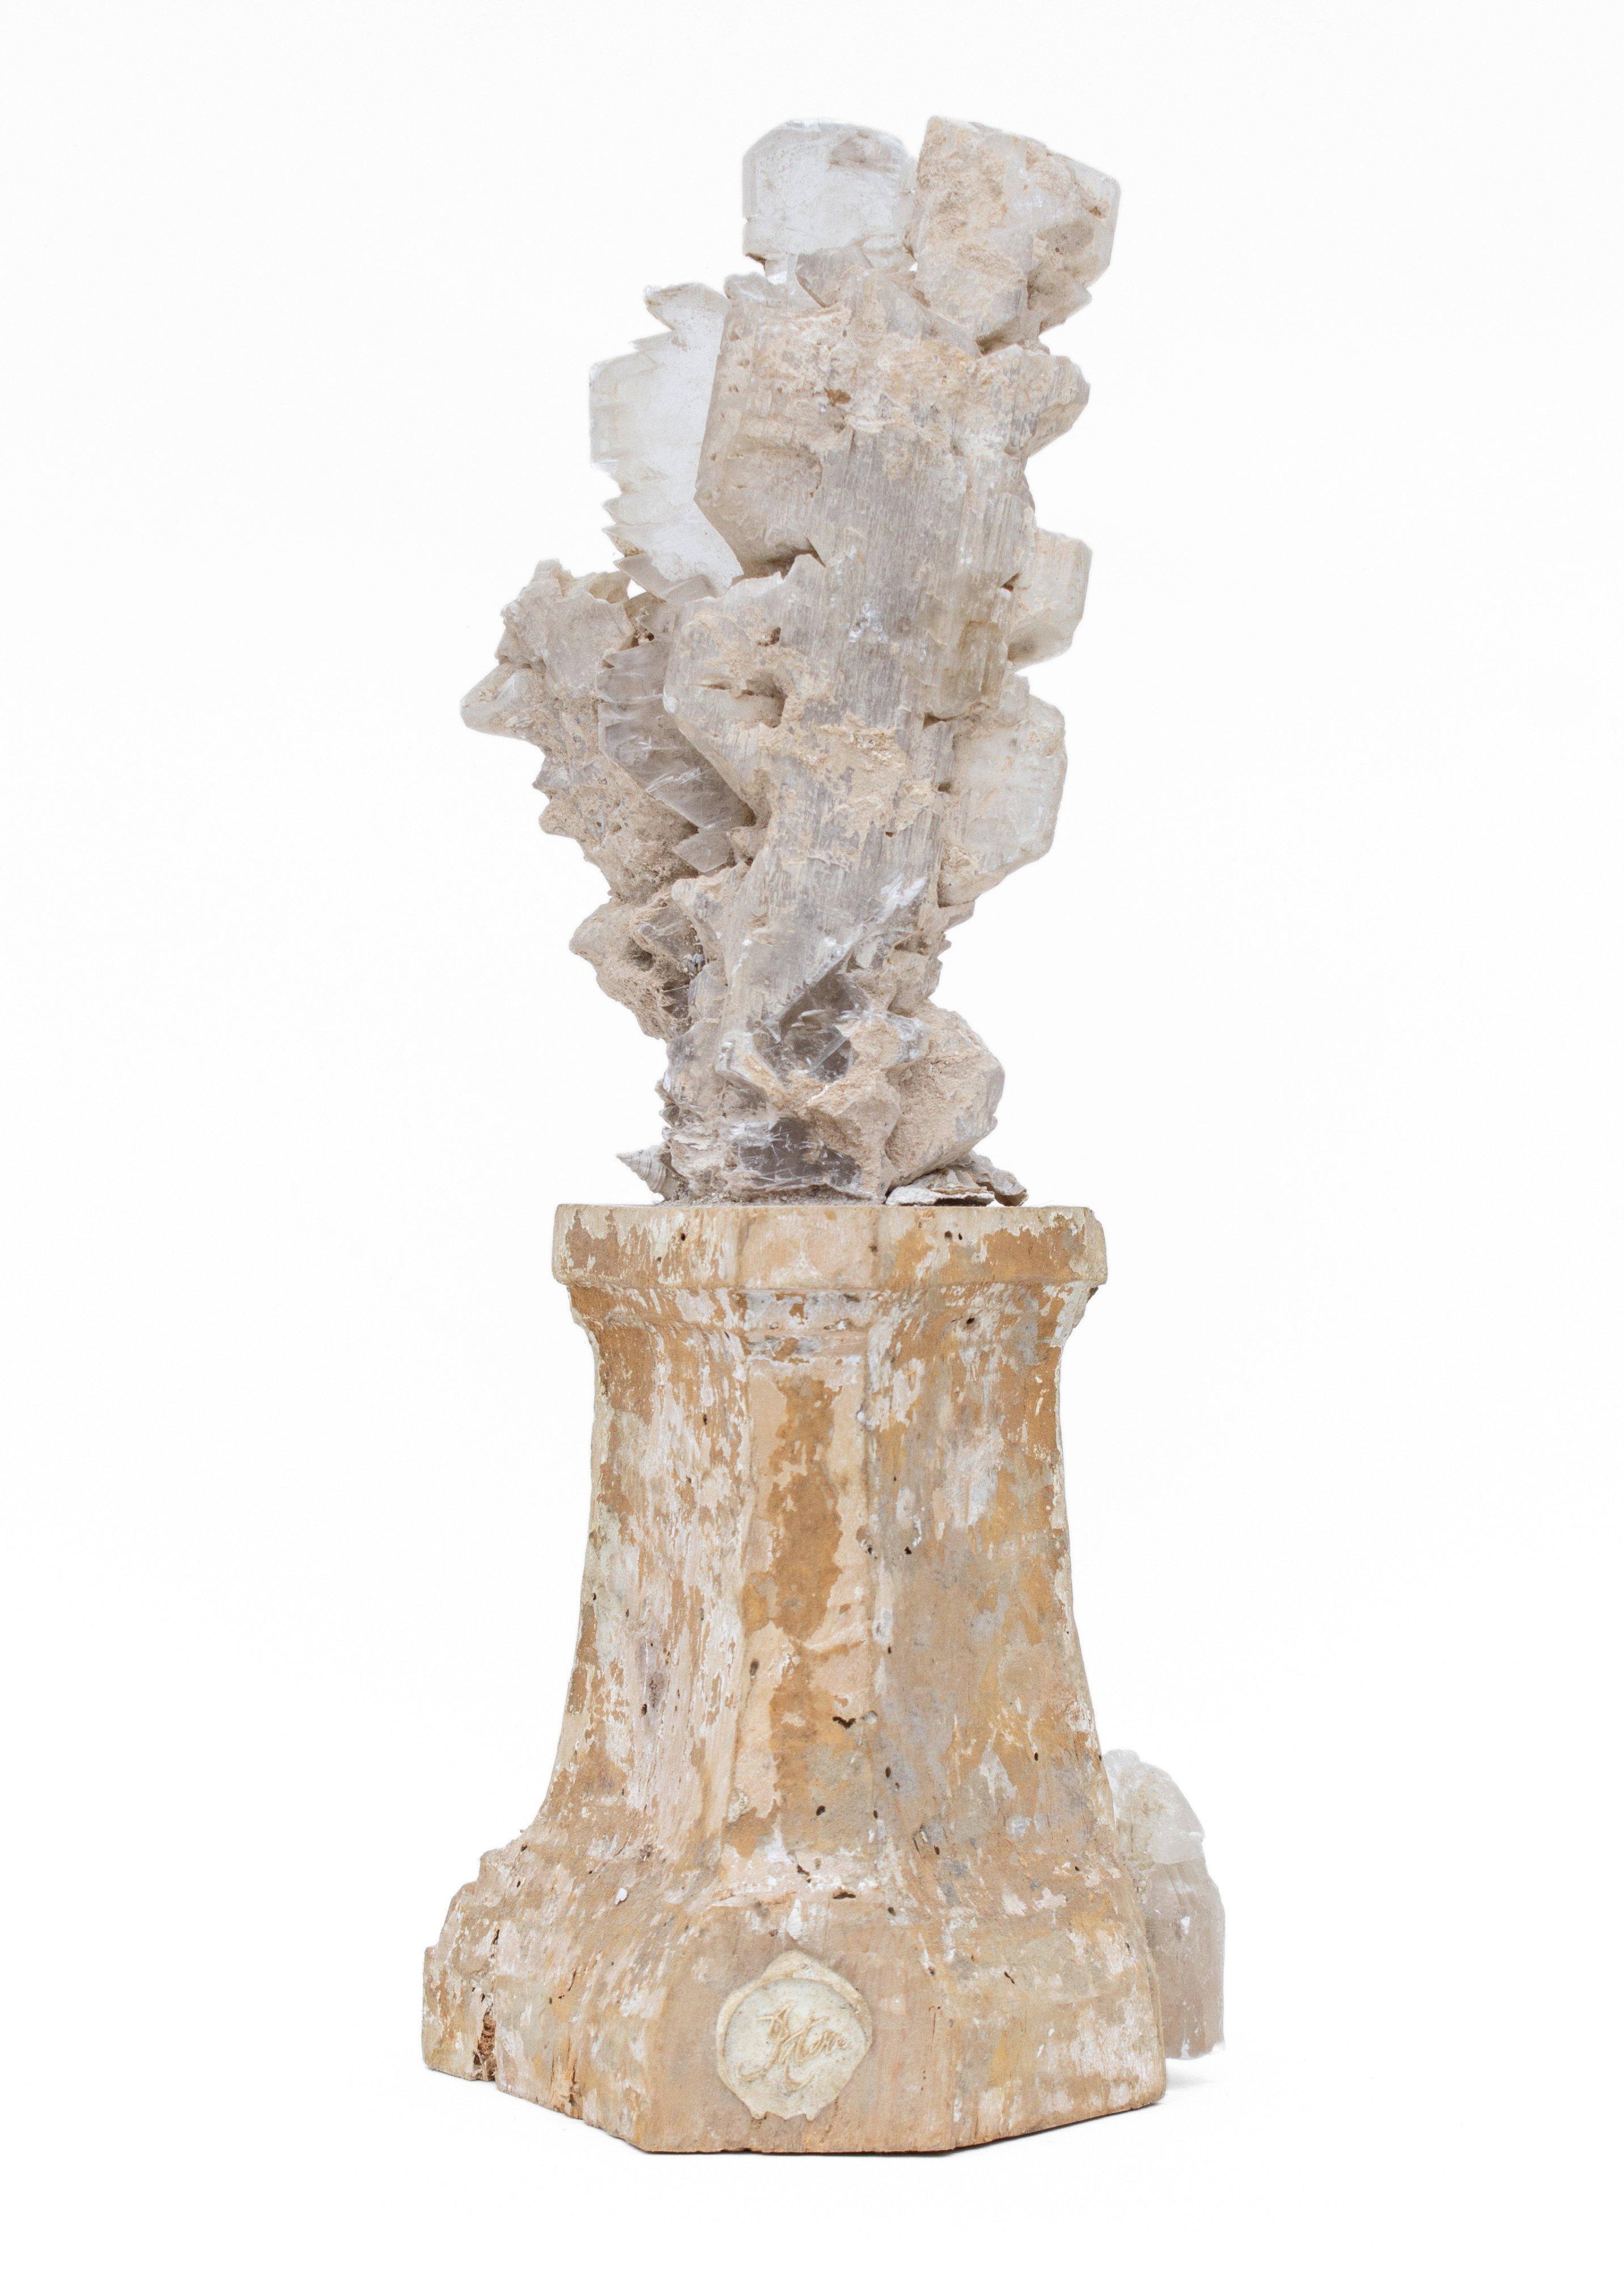 base de chandelier italien du XVIIe siècle décorée d'une grappe de lames en sélénite, coquillages fossiles. Ce fragment provient d'une église de Florence. Il a été trouvé et sauvé de la fameuse inondation de la rivière Arno en 1966. 

La pièce a été